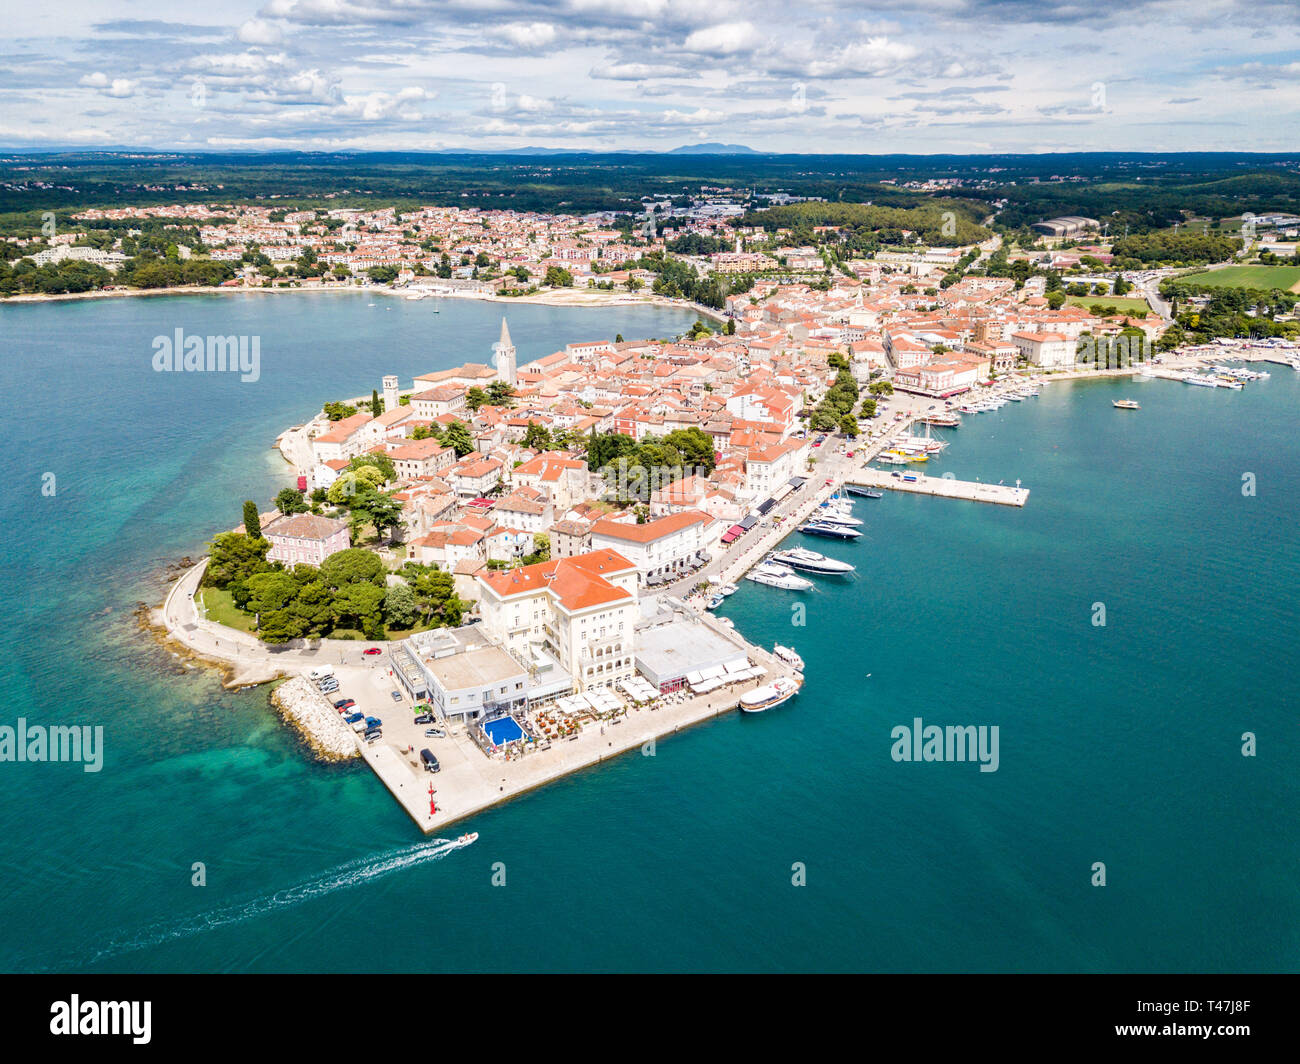 Ville croate de Porec, port d'azur bleu turquoise de la mer Adriatique, la péninsule d'Istrie, Croatie. Bell Tower, red toits de bâtiments historiques, b Banque D'Images